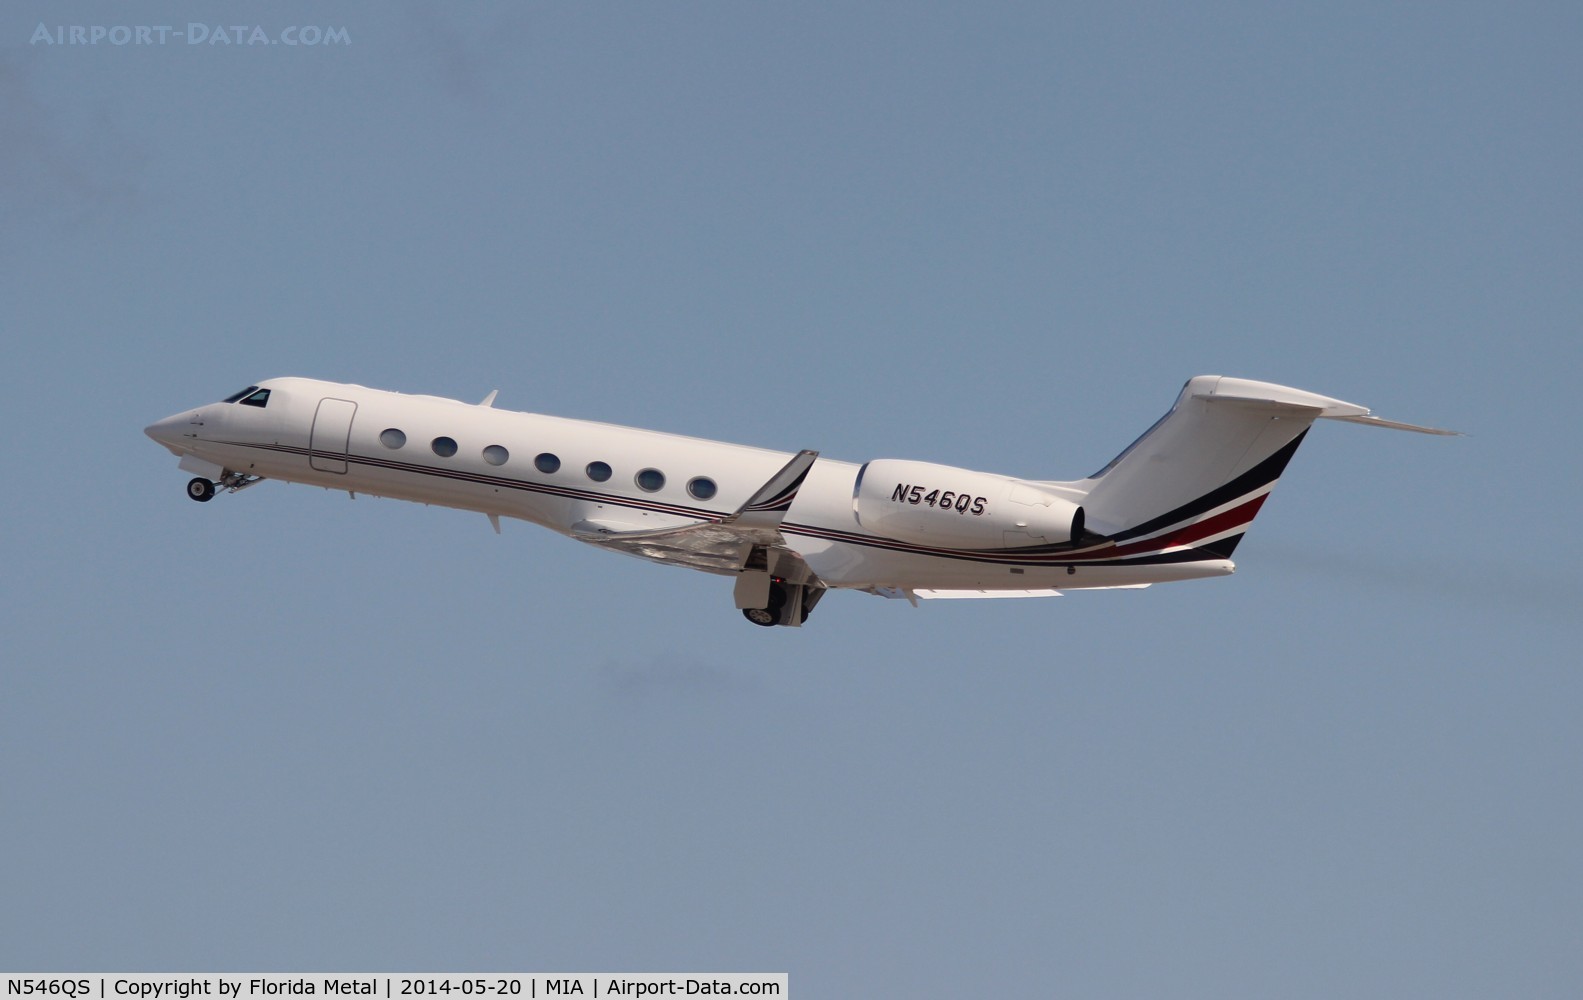 N546QS, 2008 Gulfstream Aerospace GV-SP (G550) C/N 5190, Net Jets